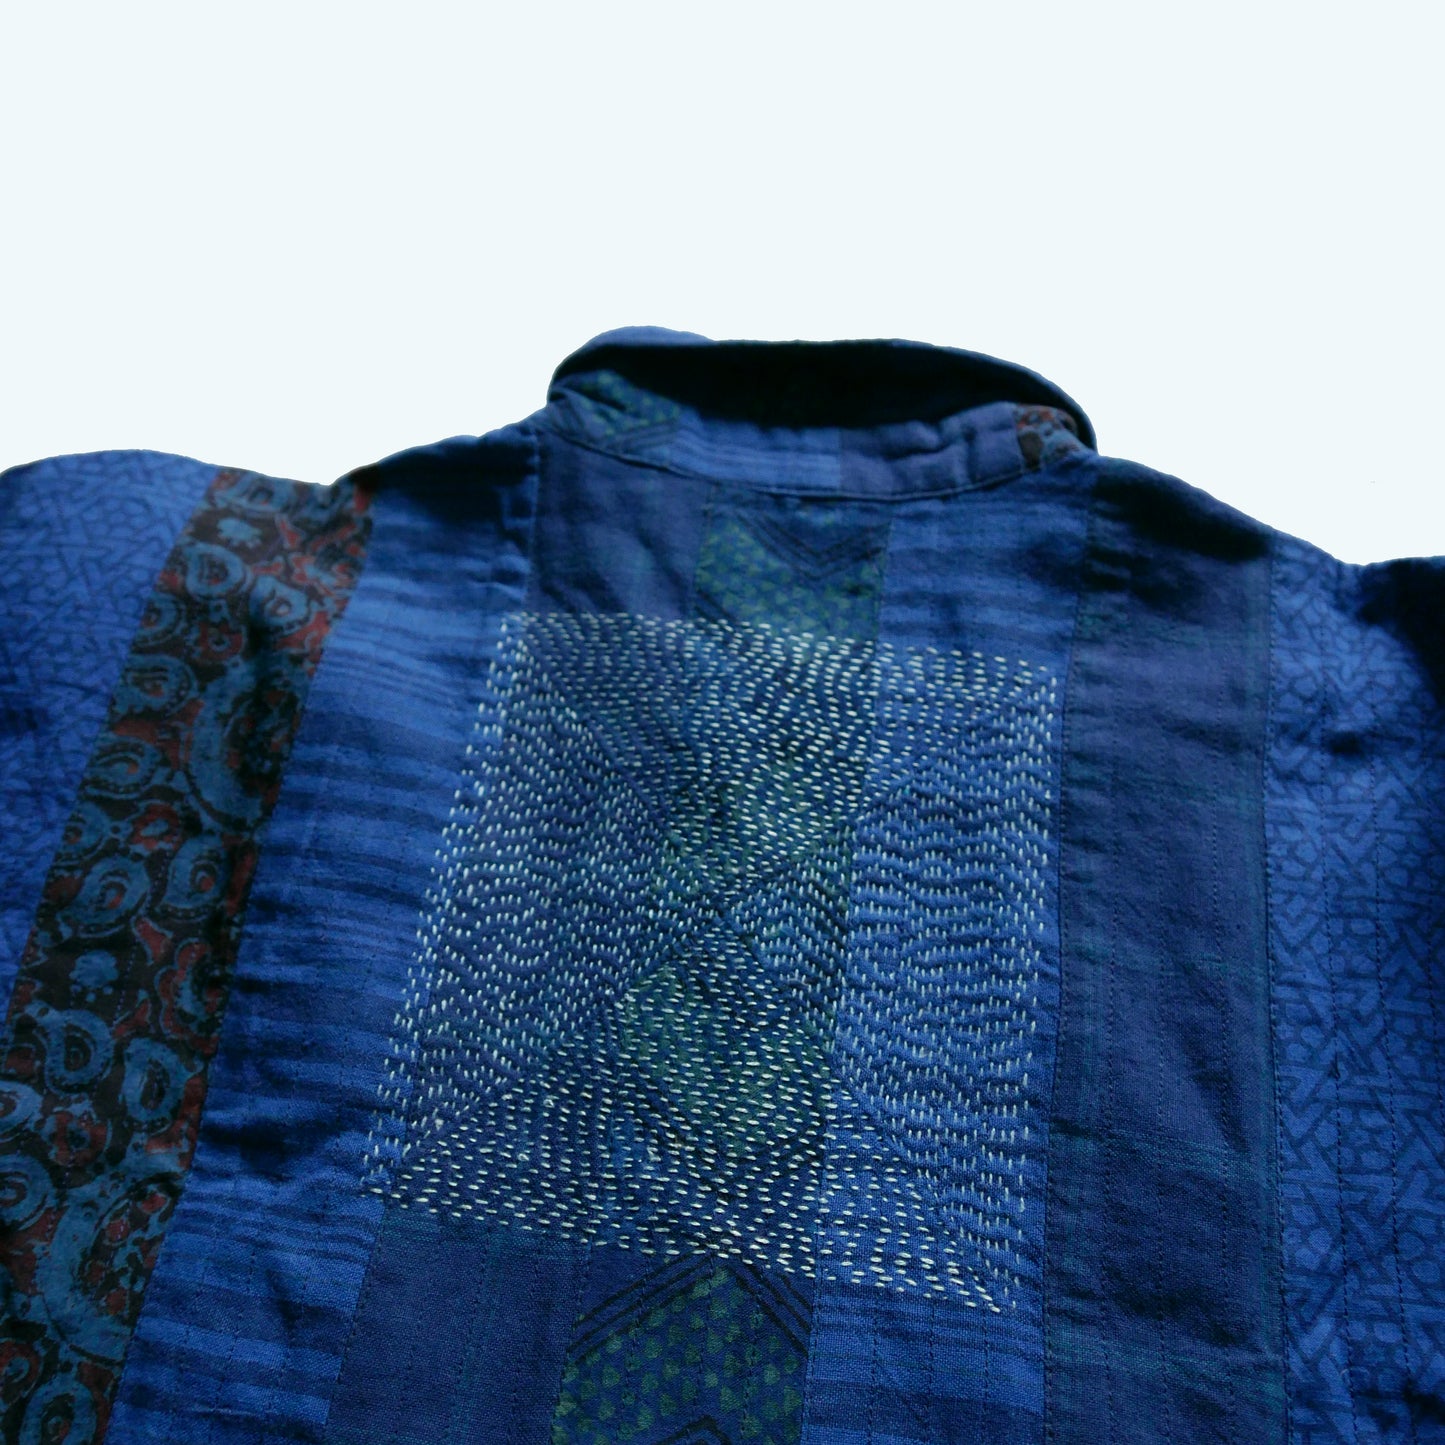 India, Indigene, Textile & Clothing Design